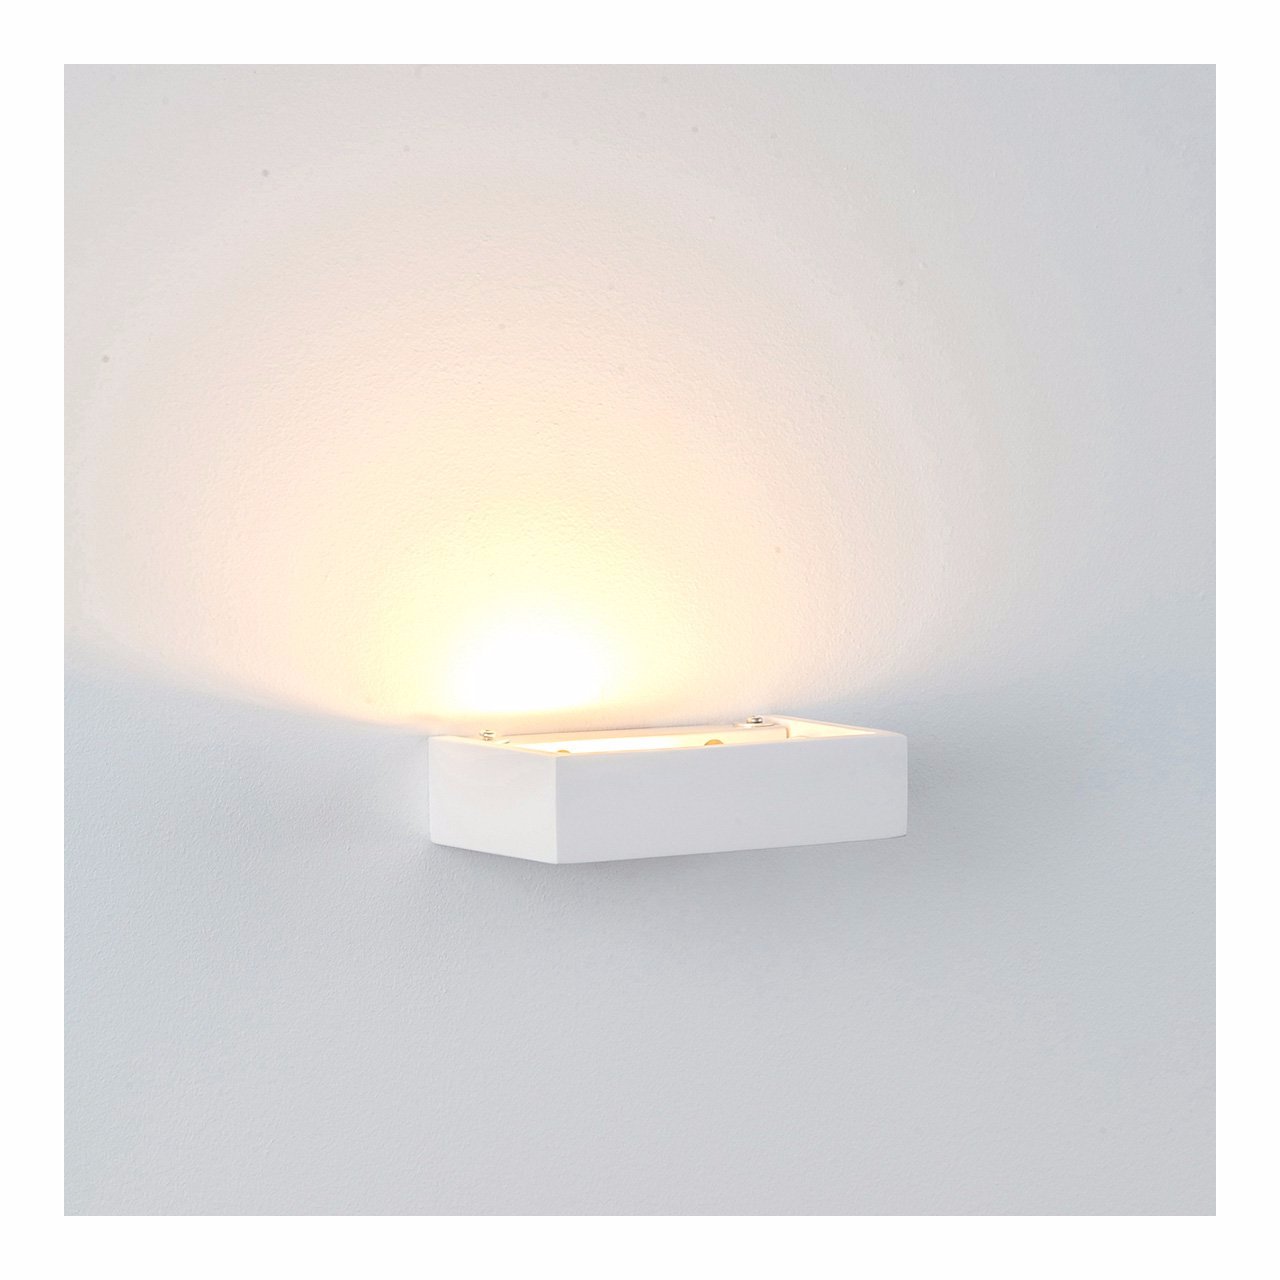 Hv8069 - Sunrise Small LED Plaster Wall Light